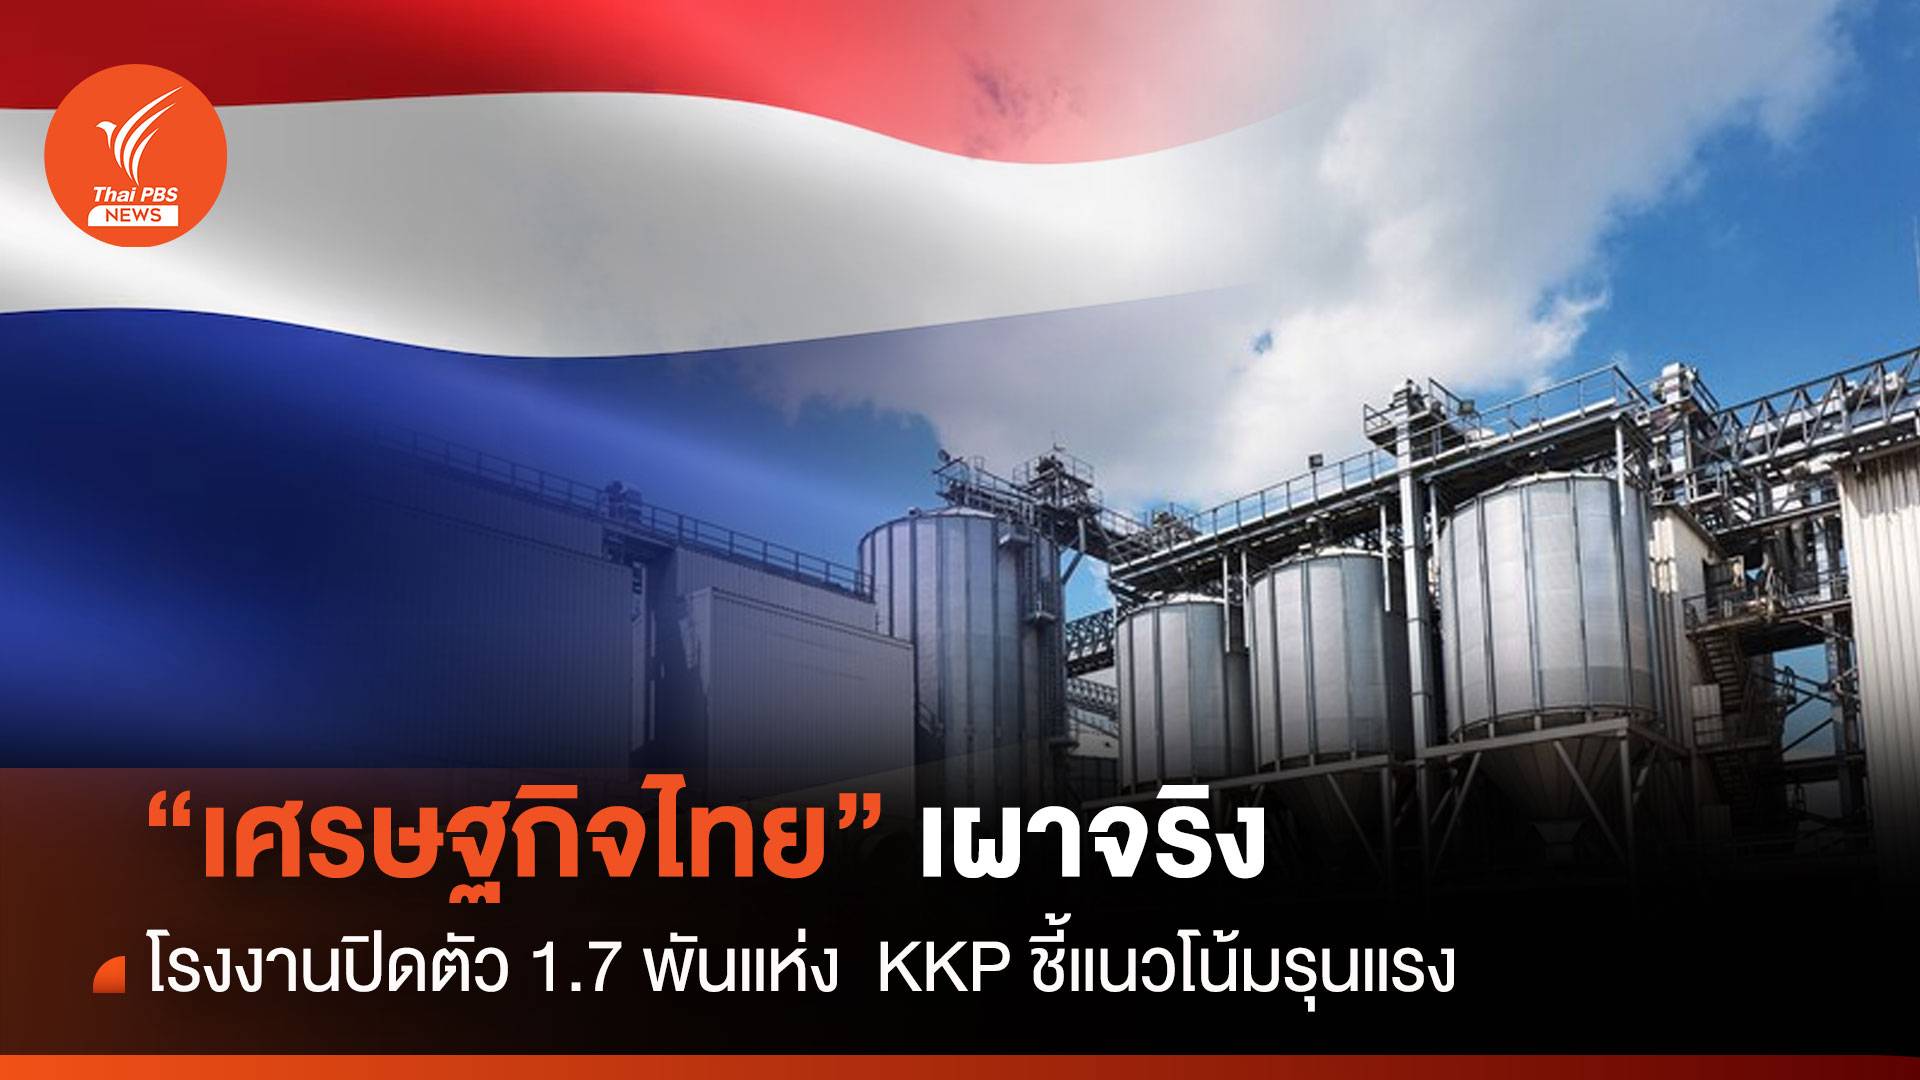 เศรษฐกิจไทยเผาจริง รง.ปิดตัว 1.7 พันแห่ง  KKP ชี้แนวโน้มรุนแรง